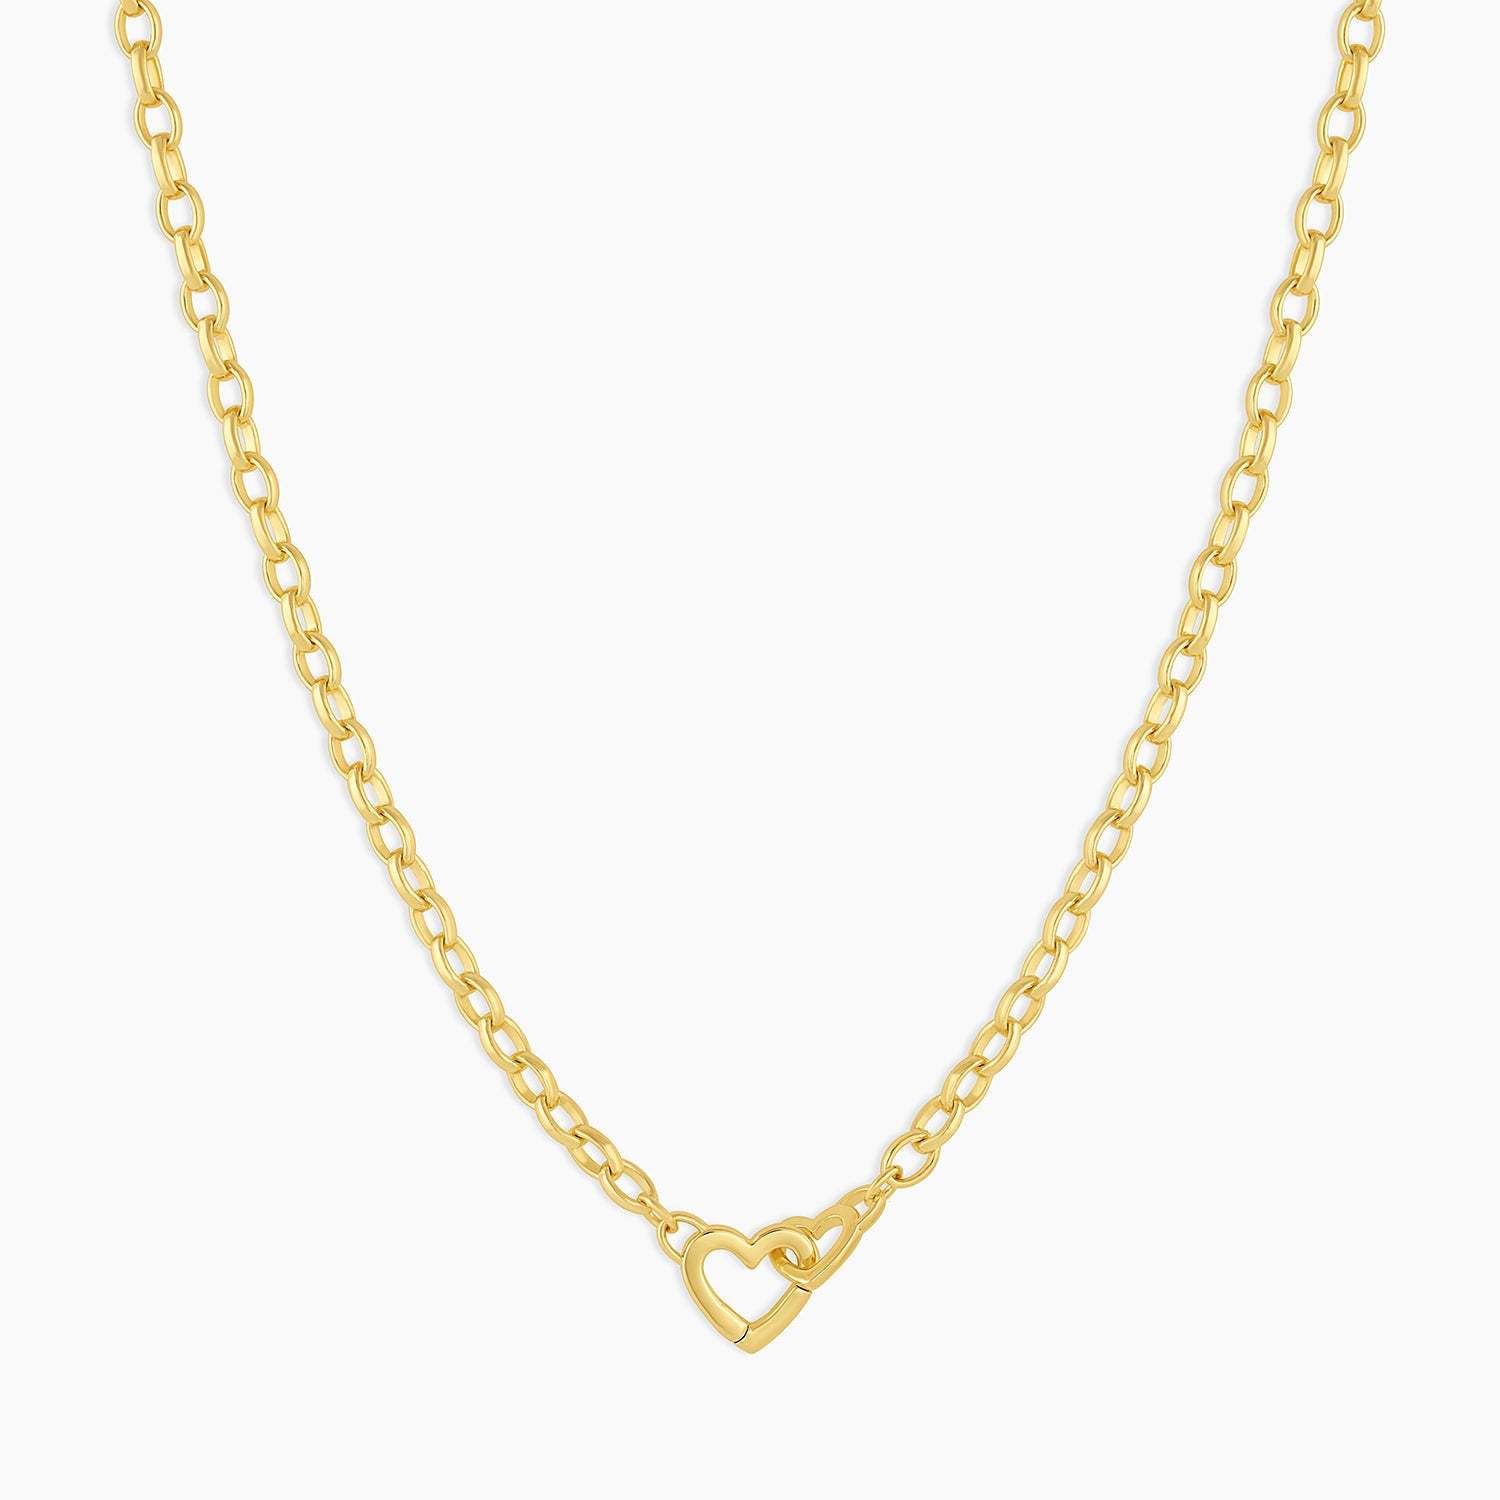 1:Gold necklace 42cm long